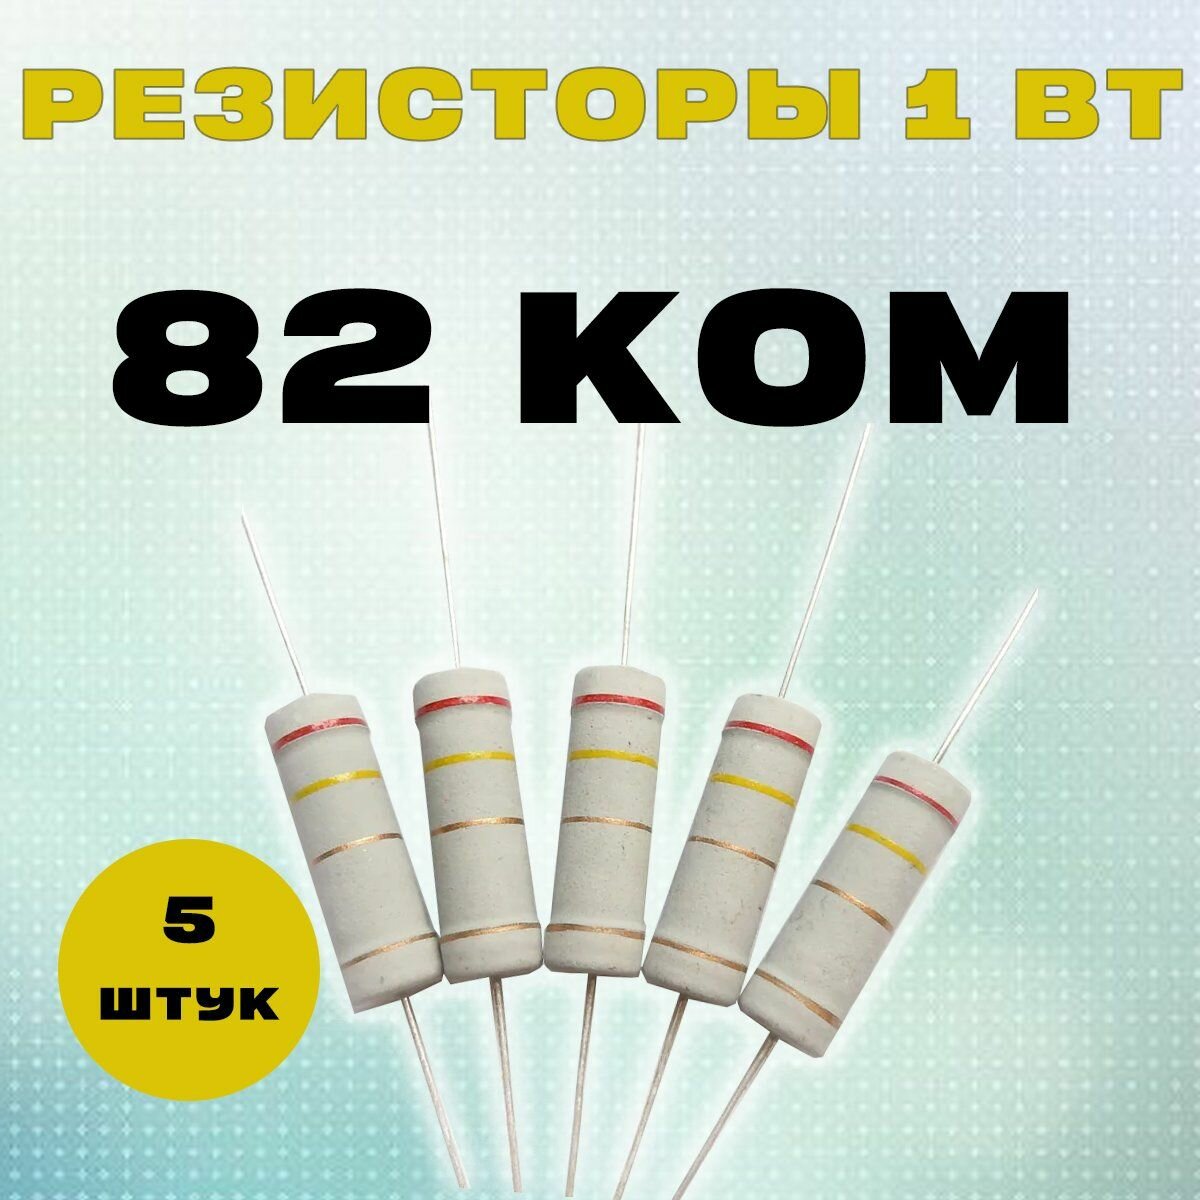 Резистор 1W 82K kOm - 1 Вт 82 кОм